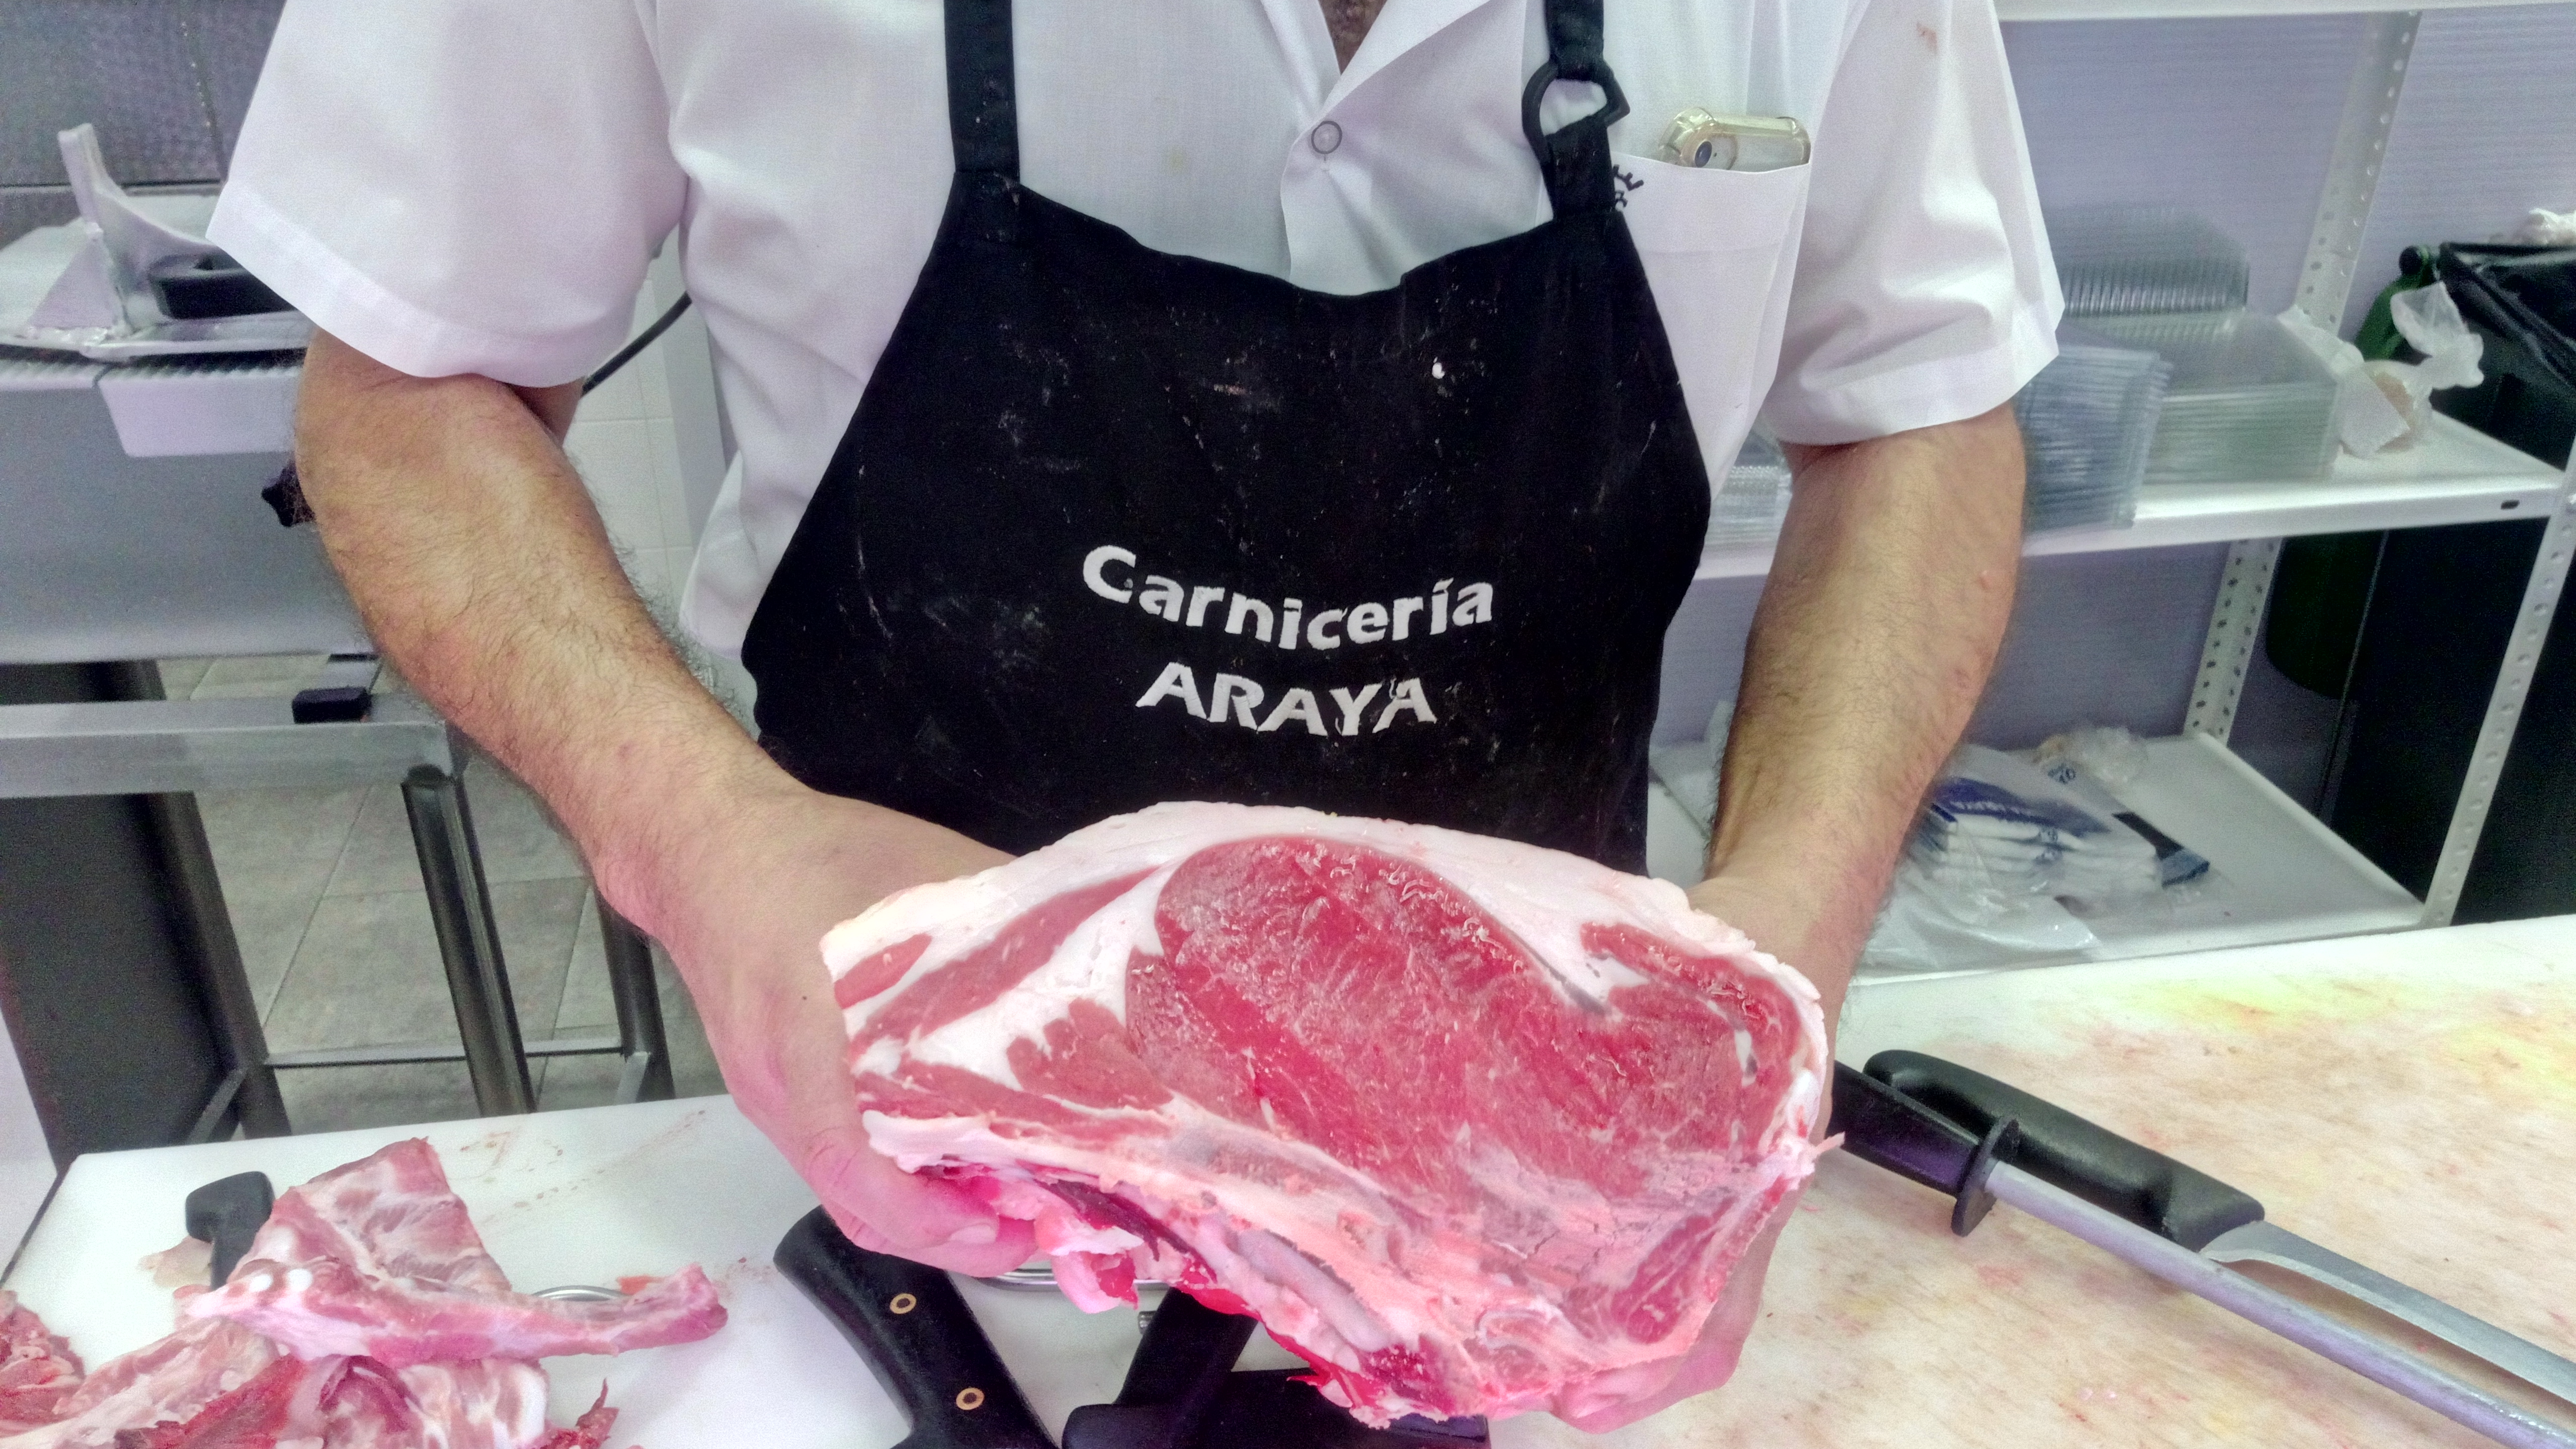 Carnicería especializada en Almendralejo Araya Plaza de AbastosCarnicería especializada en Almendralejo Araya Plaza de Abastos